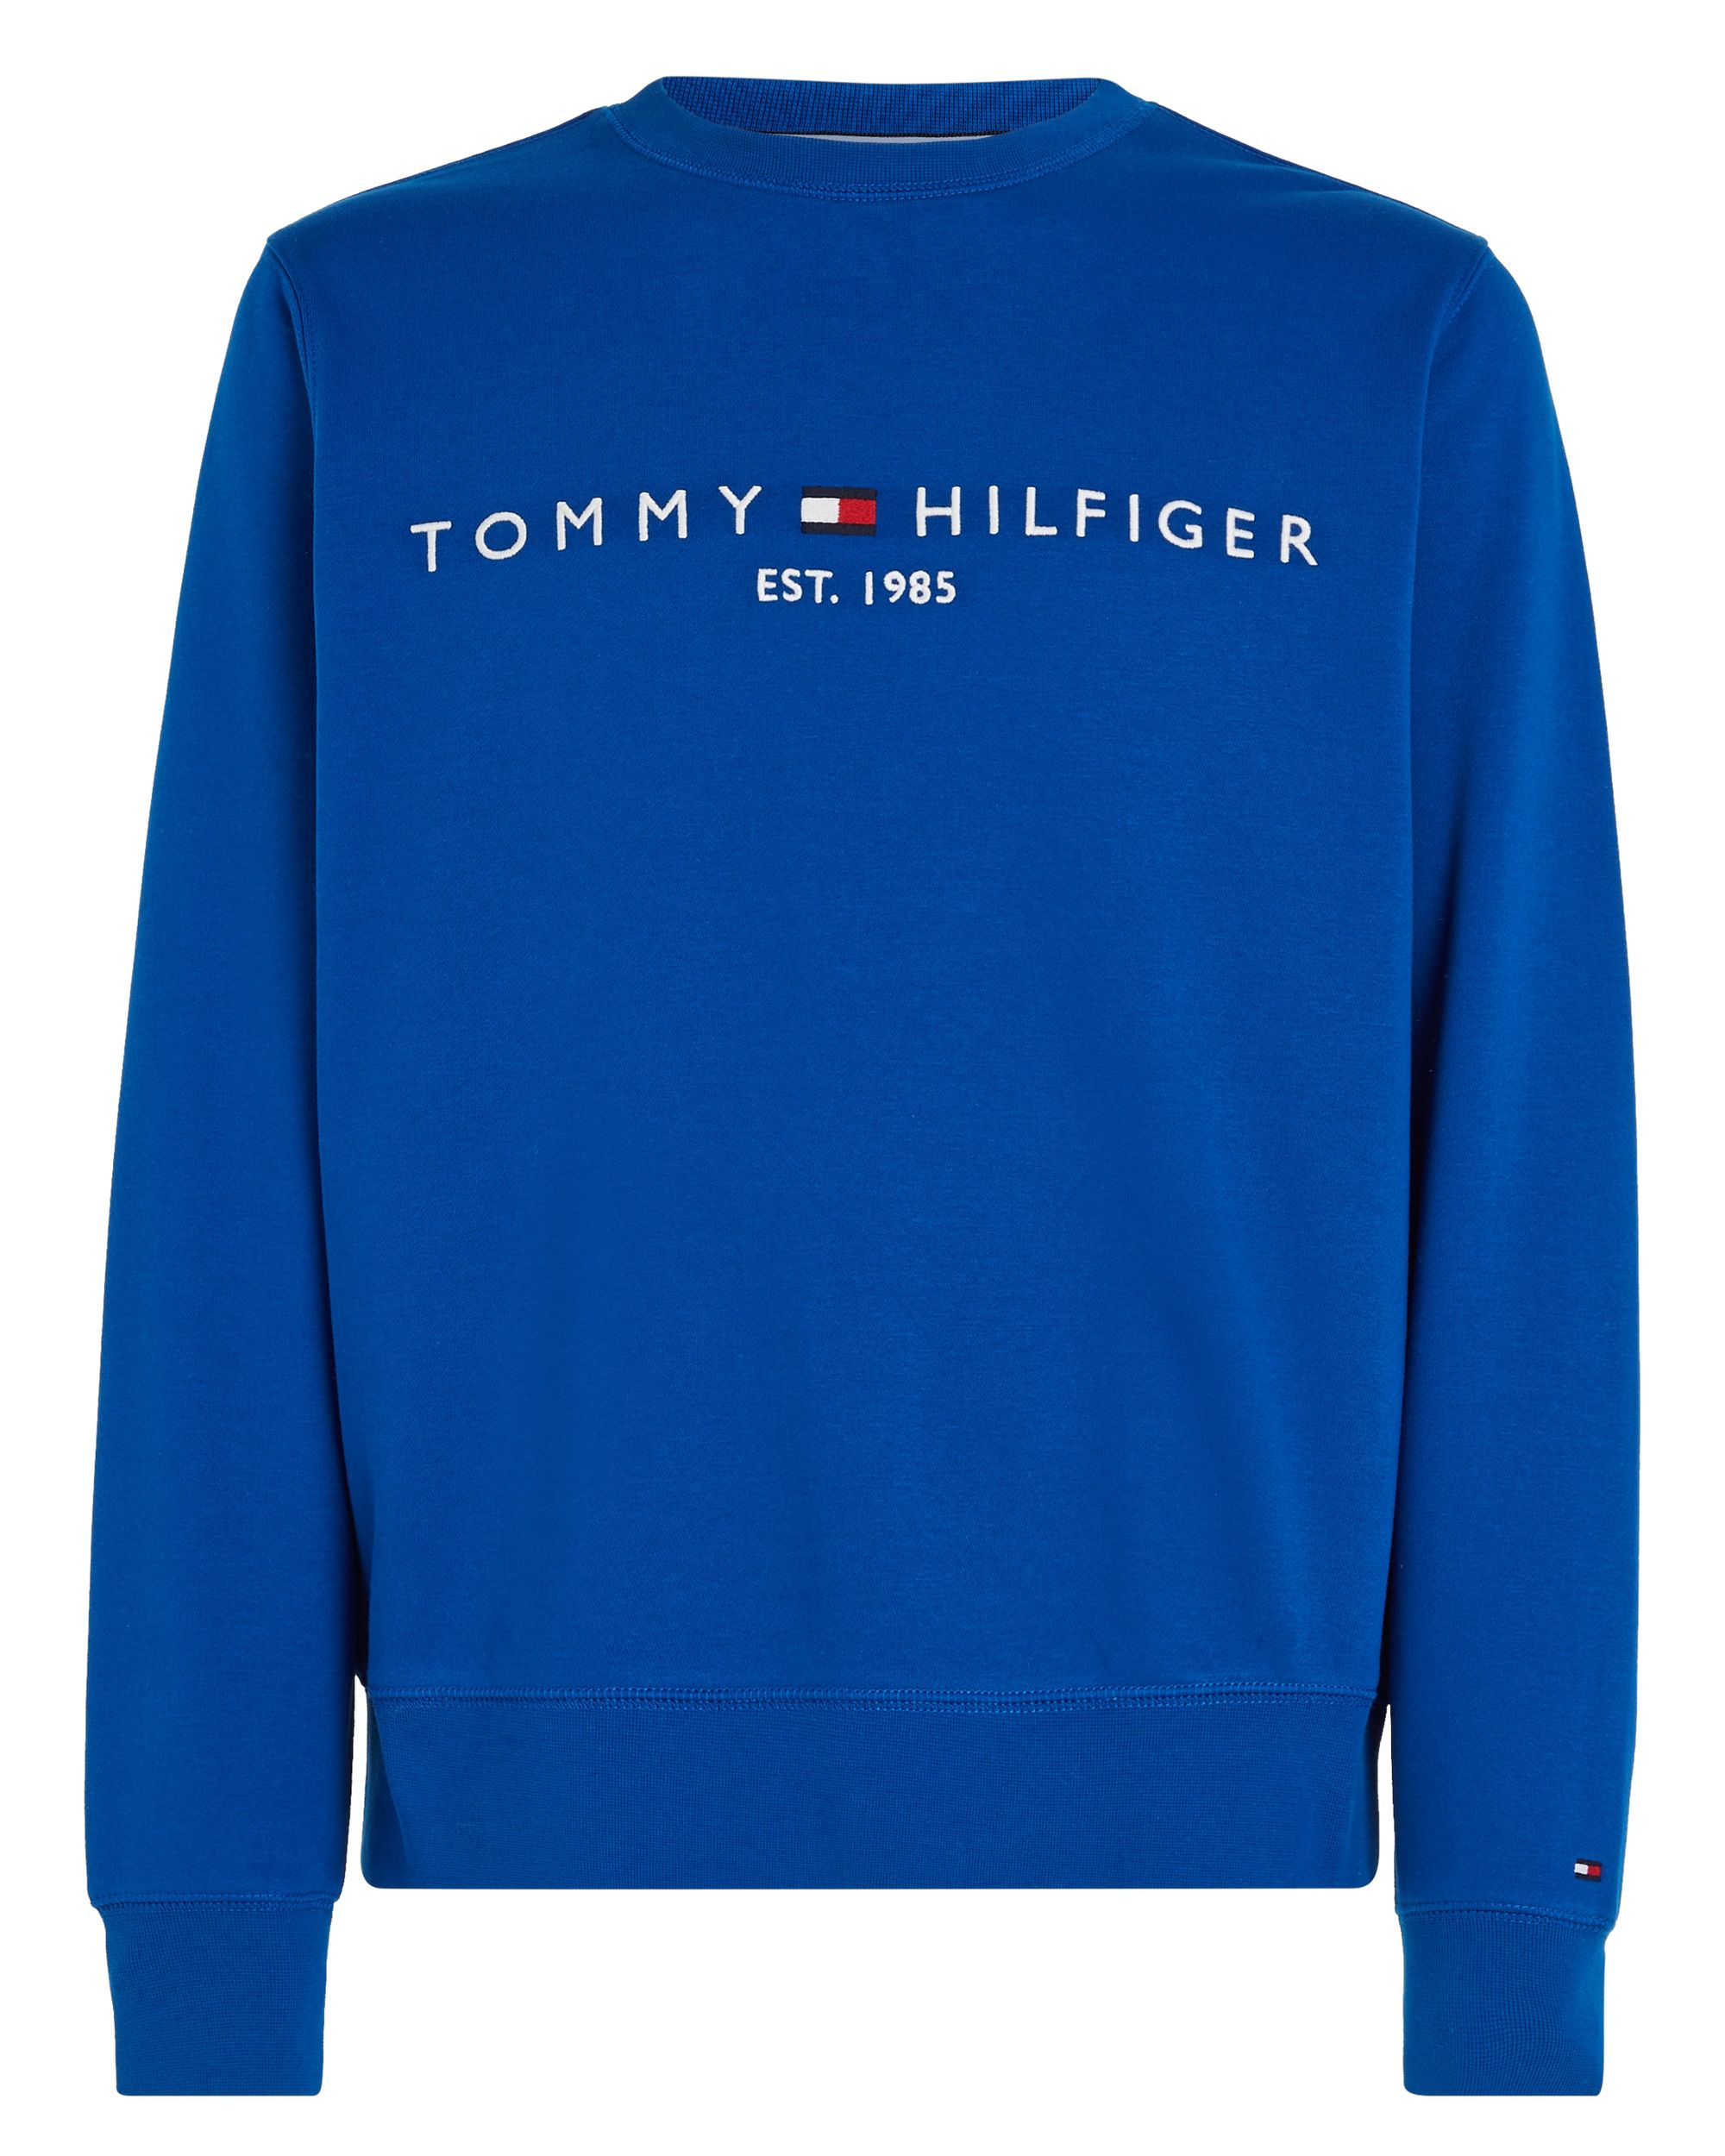 Tommy Hilfiger Menswear Sweater Blauw 081212-001-L